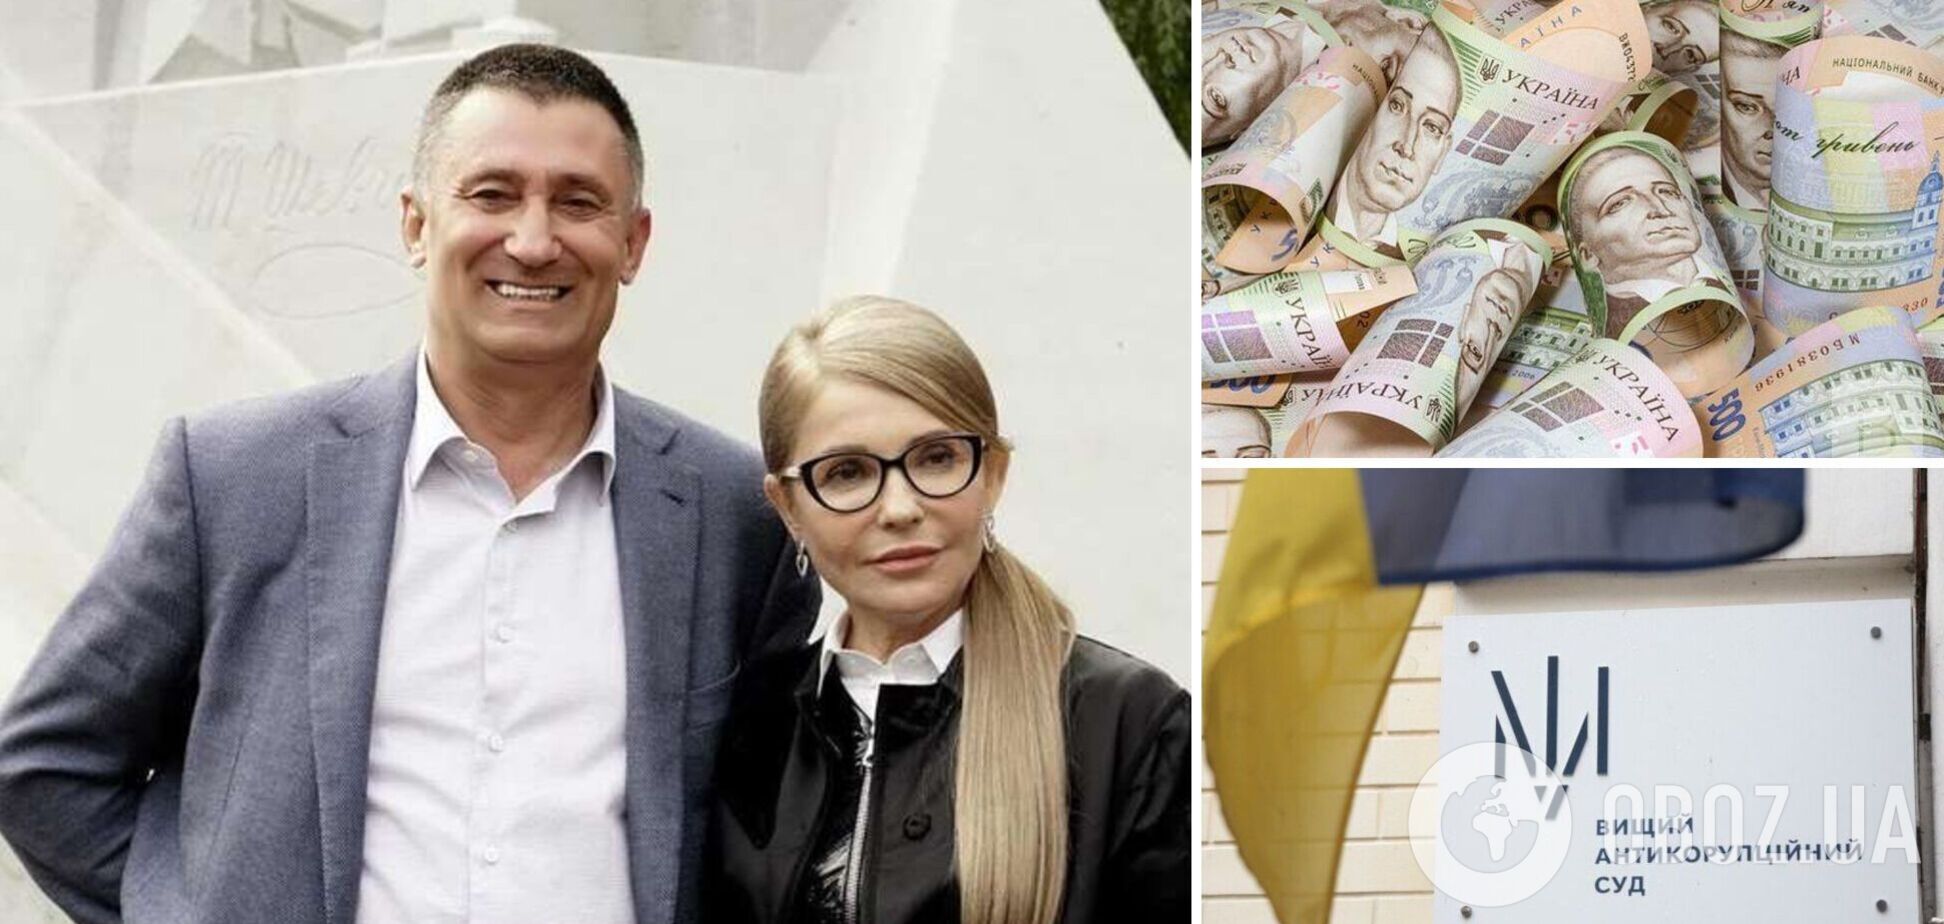 Тимошенко с нардепами от 'Батьківщини' пришли в суд брать на поруки фигуранта газовой схемы